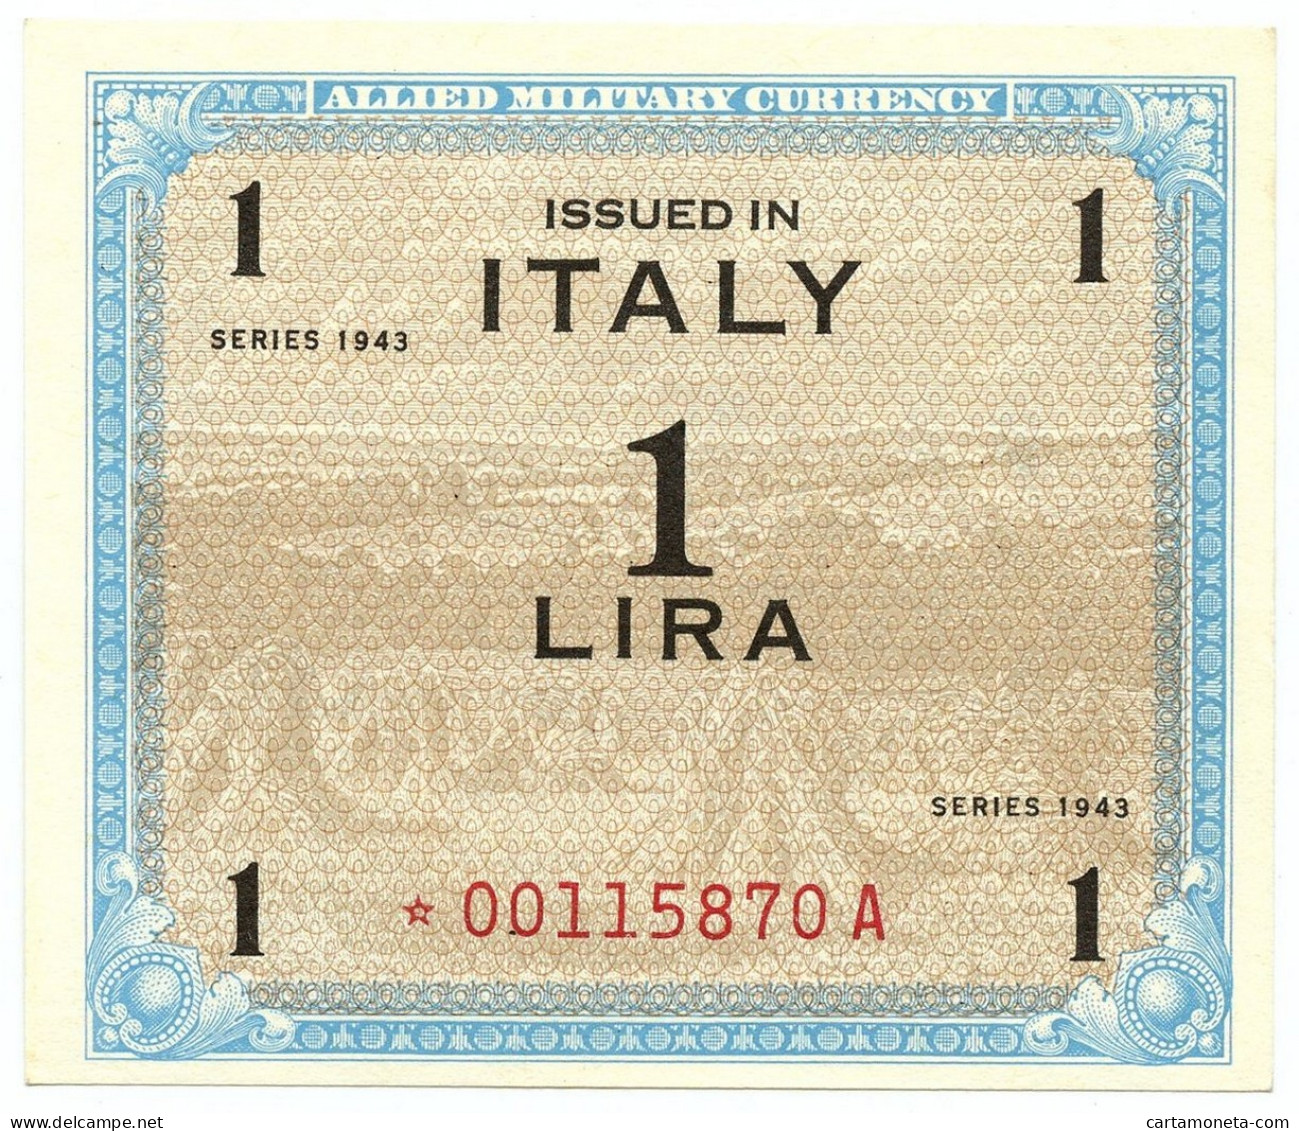 1 LIRA OCCUPAZIONE AMERICANA IN ITALIA MONOLINGUA ASTERISCO 1943 QFDS - 2. WK - Alliierte Besatzung